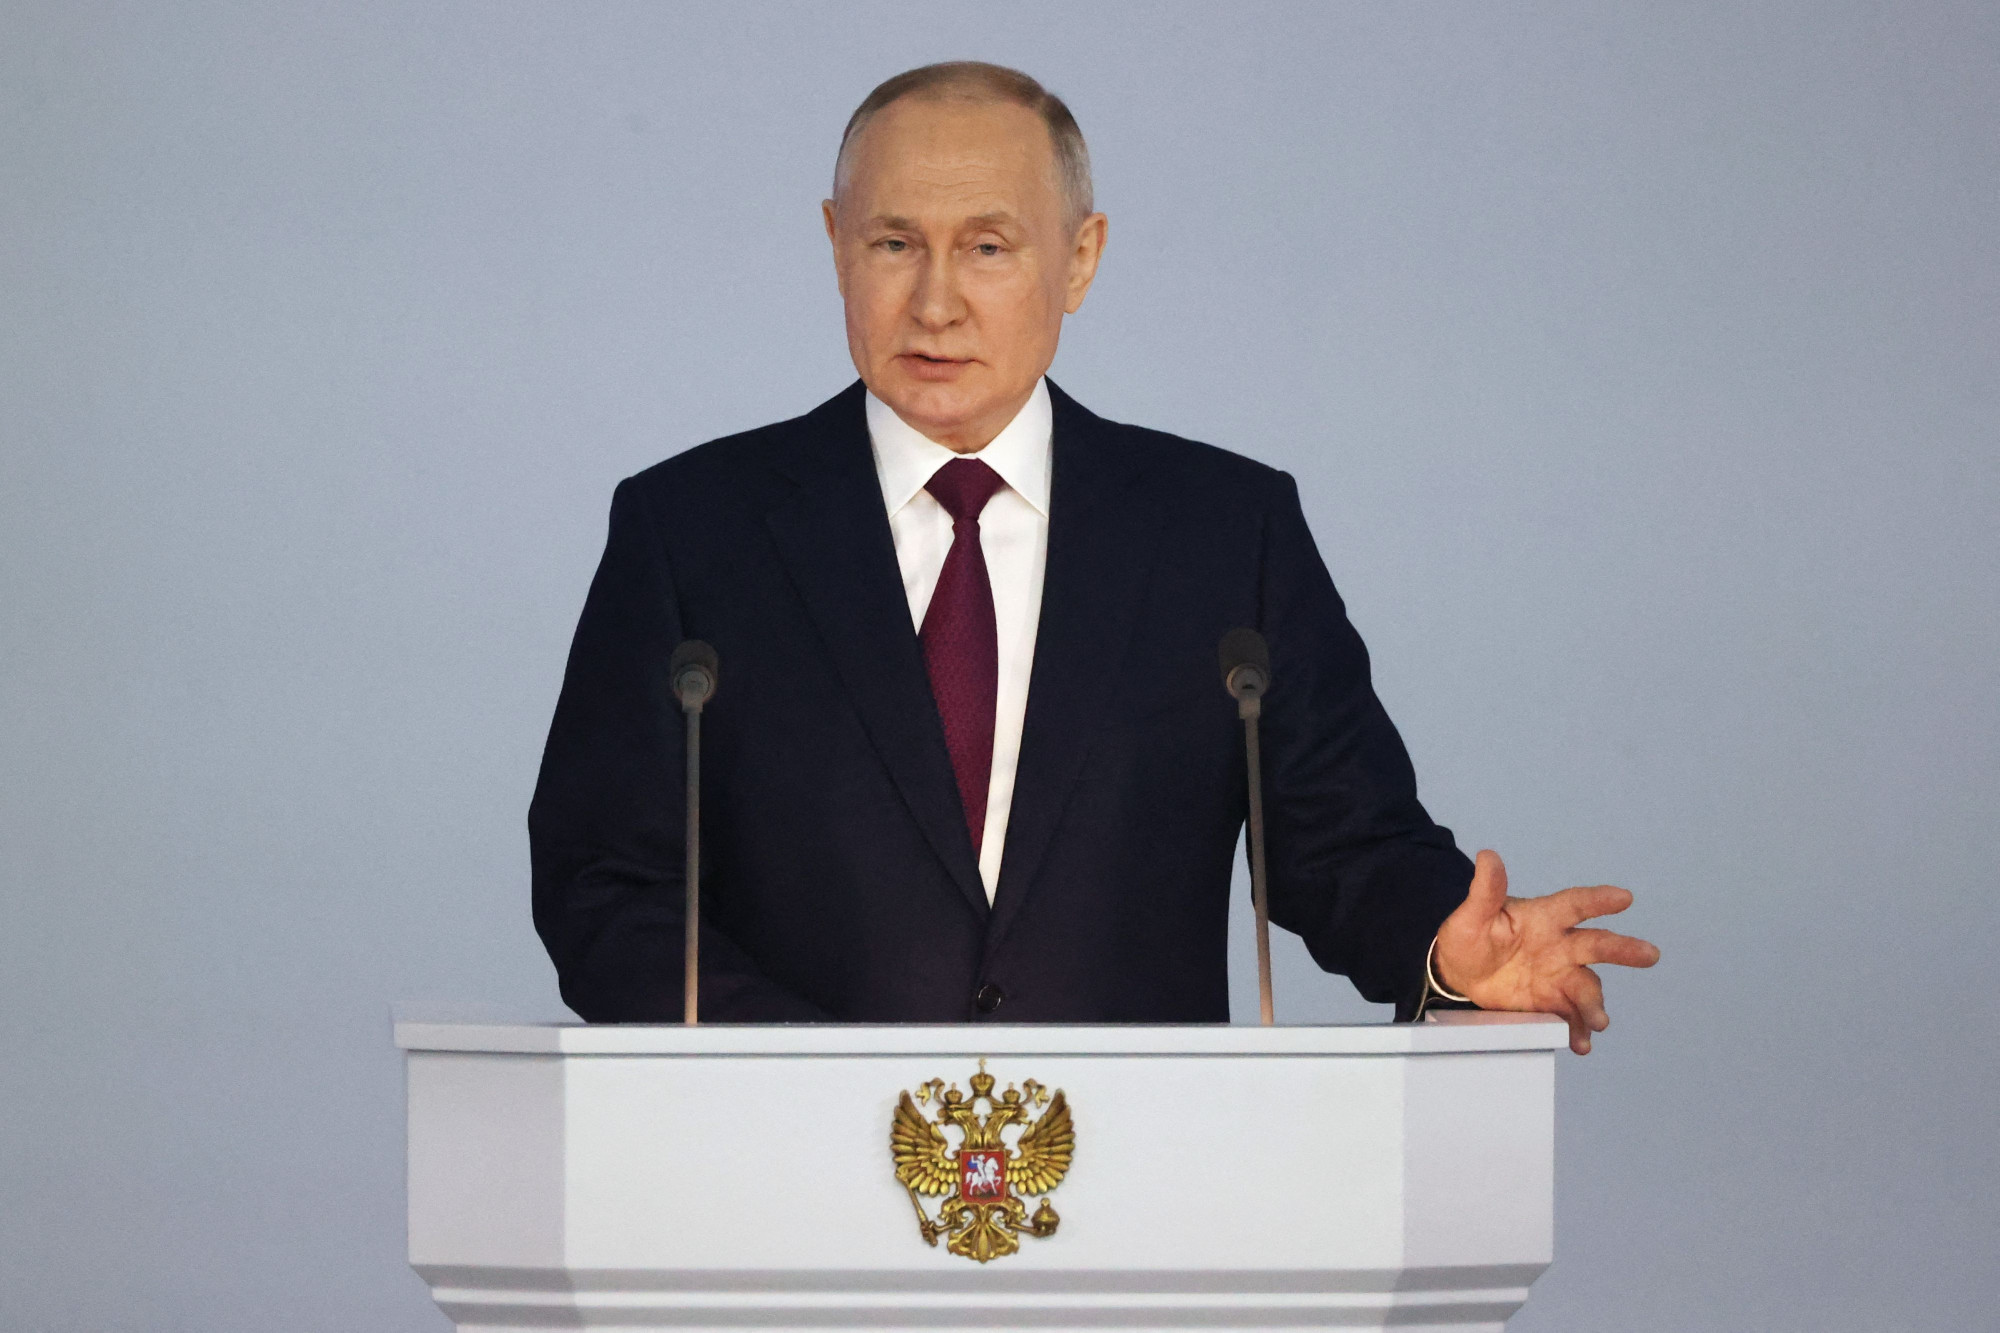 Putyin: Oroszország agressziónak fogja tekinteni a belső viszály külső provokálását